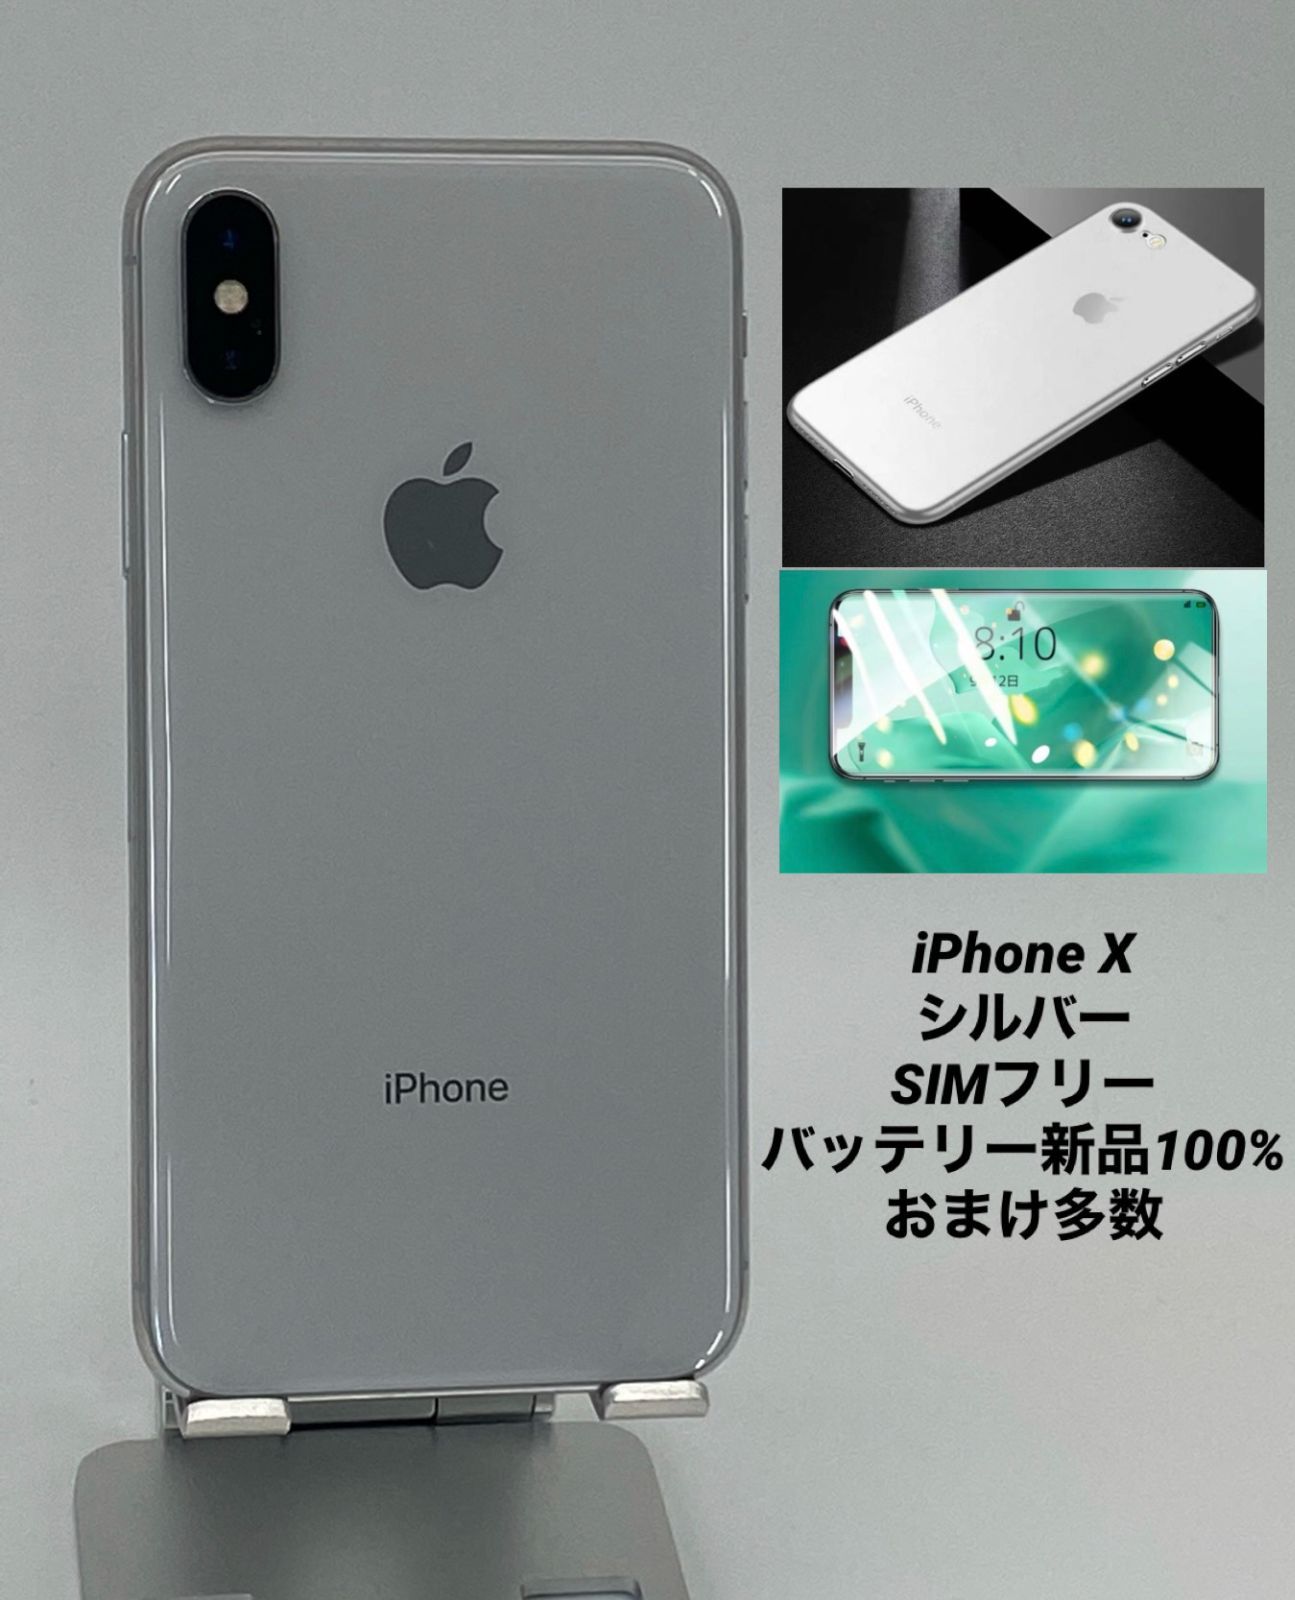 iPhoneX 256GB シルバー/シムフリー/大容量3450mAh新品バッテリー100